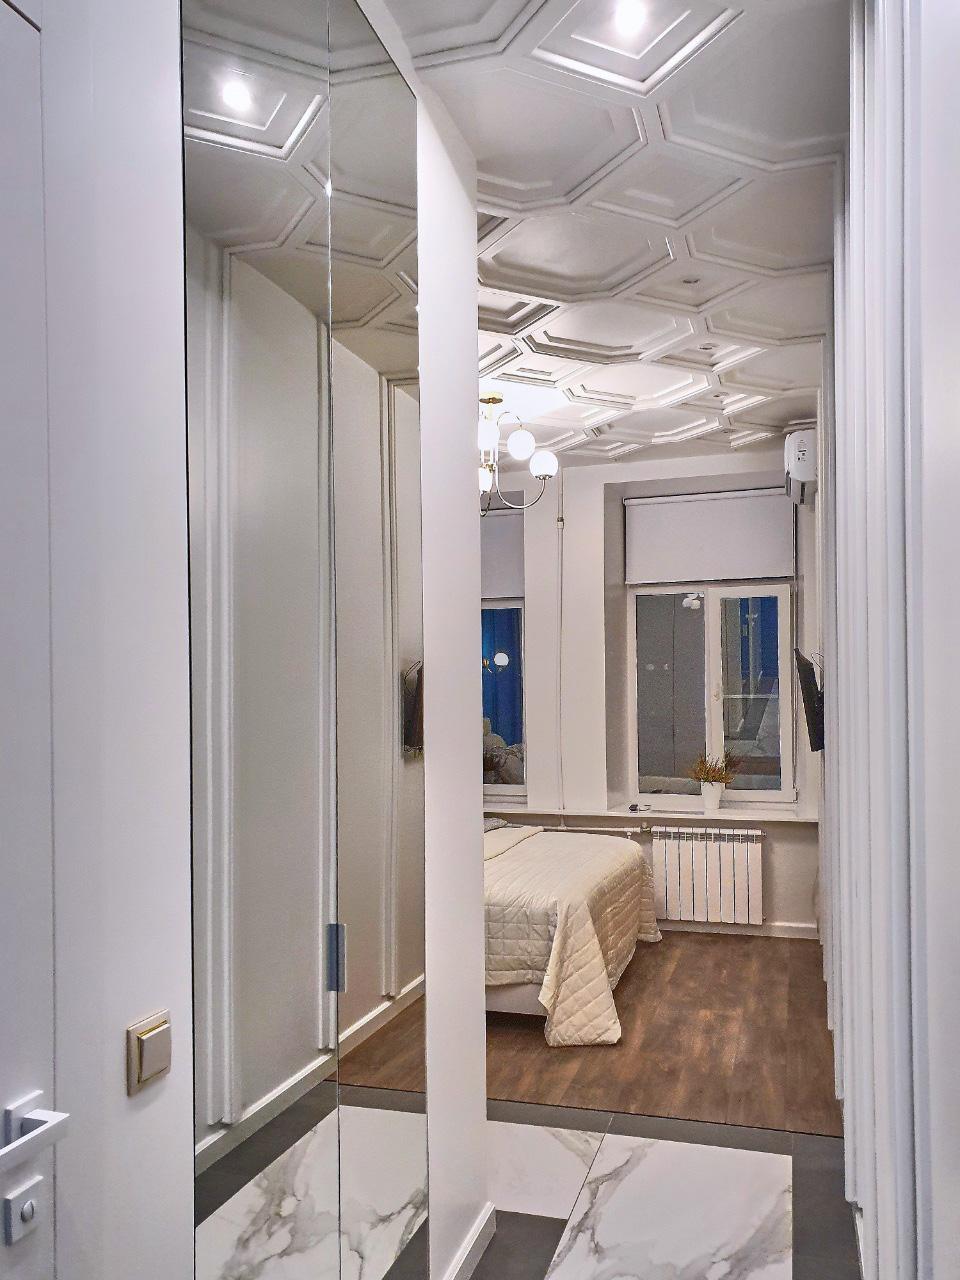 Интерьер гардеробной с зеркалом в нише, без дверей, проходной, проемом и зеркалом на двери